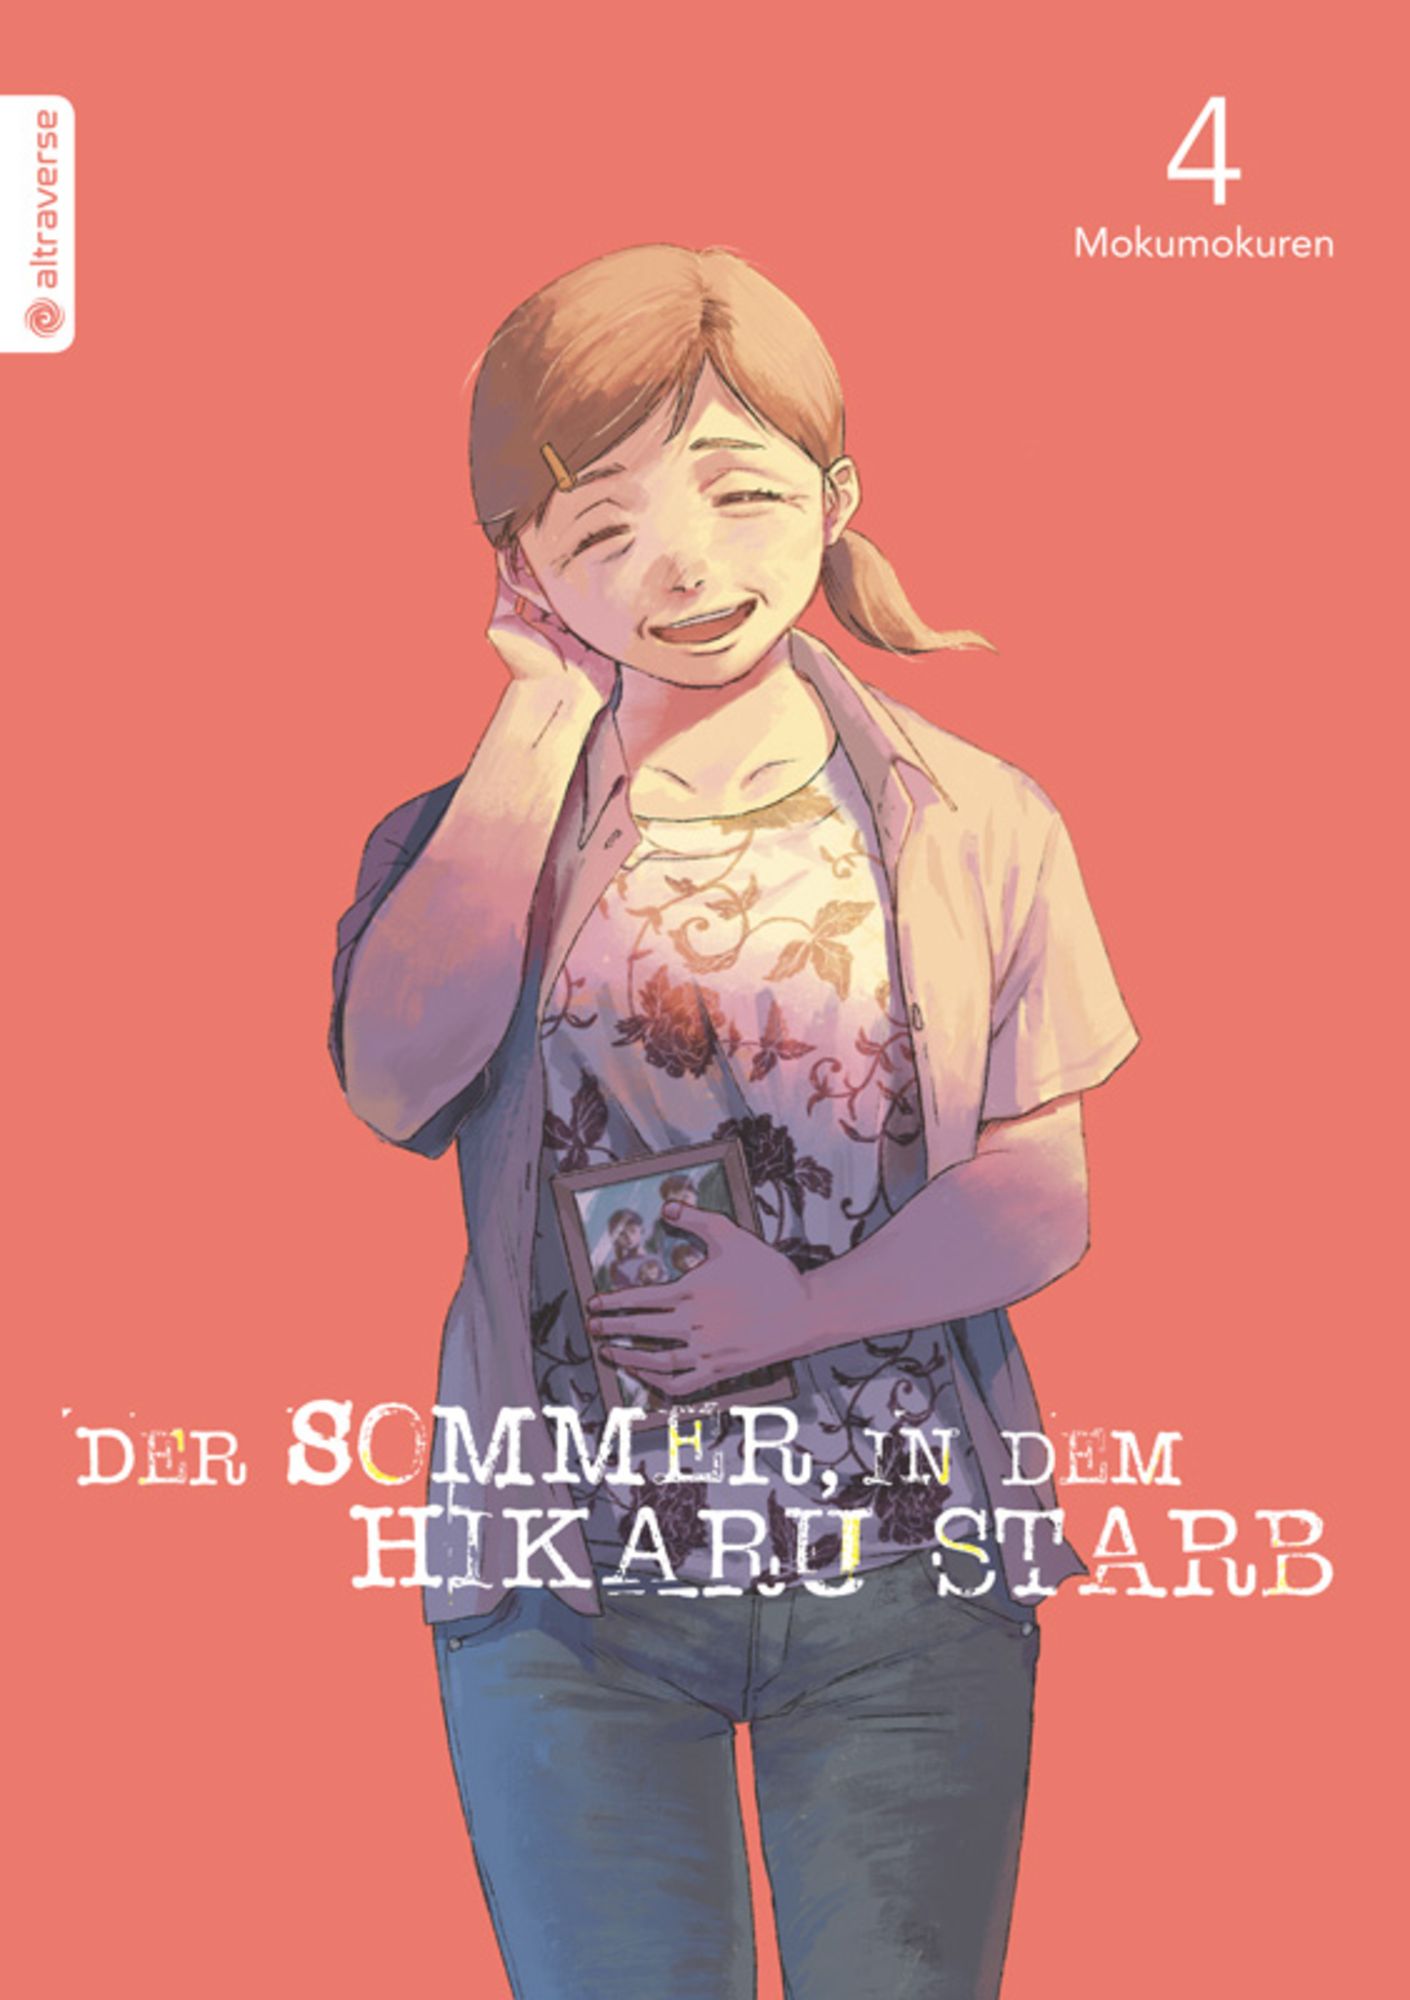 Der Sommer, in dem Hikaru starb